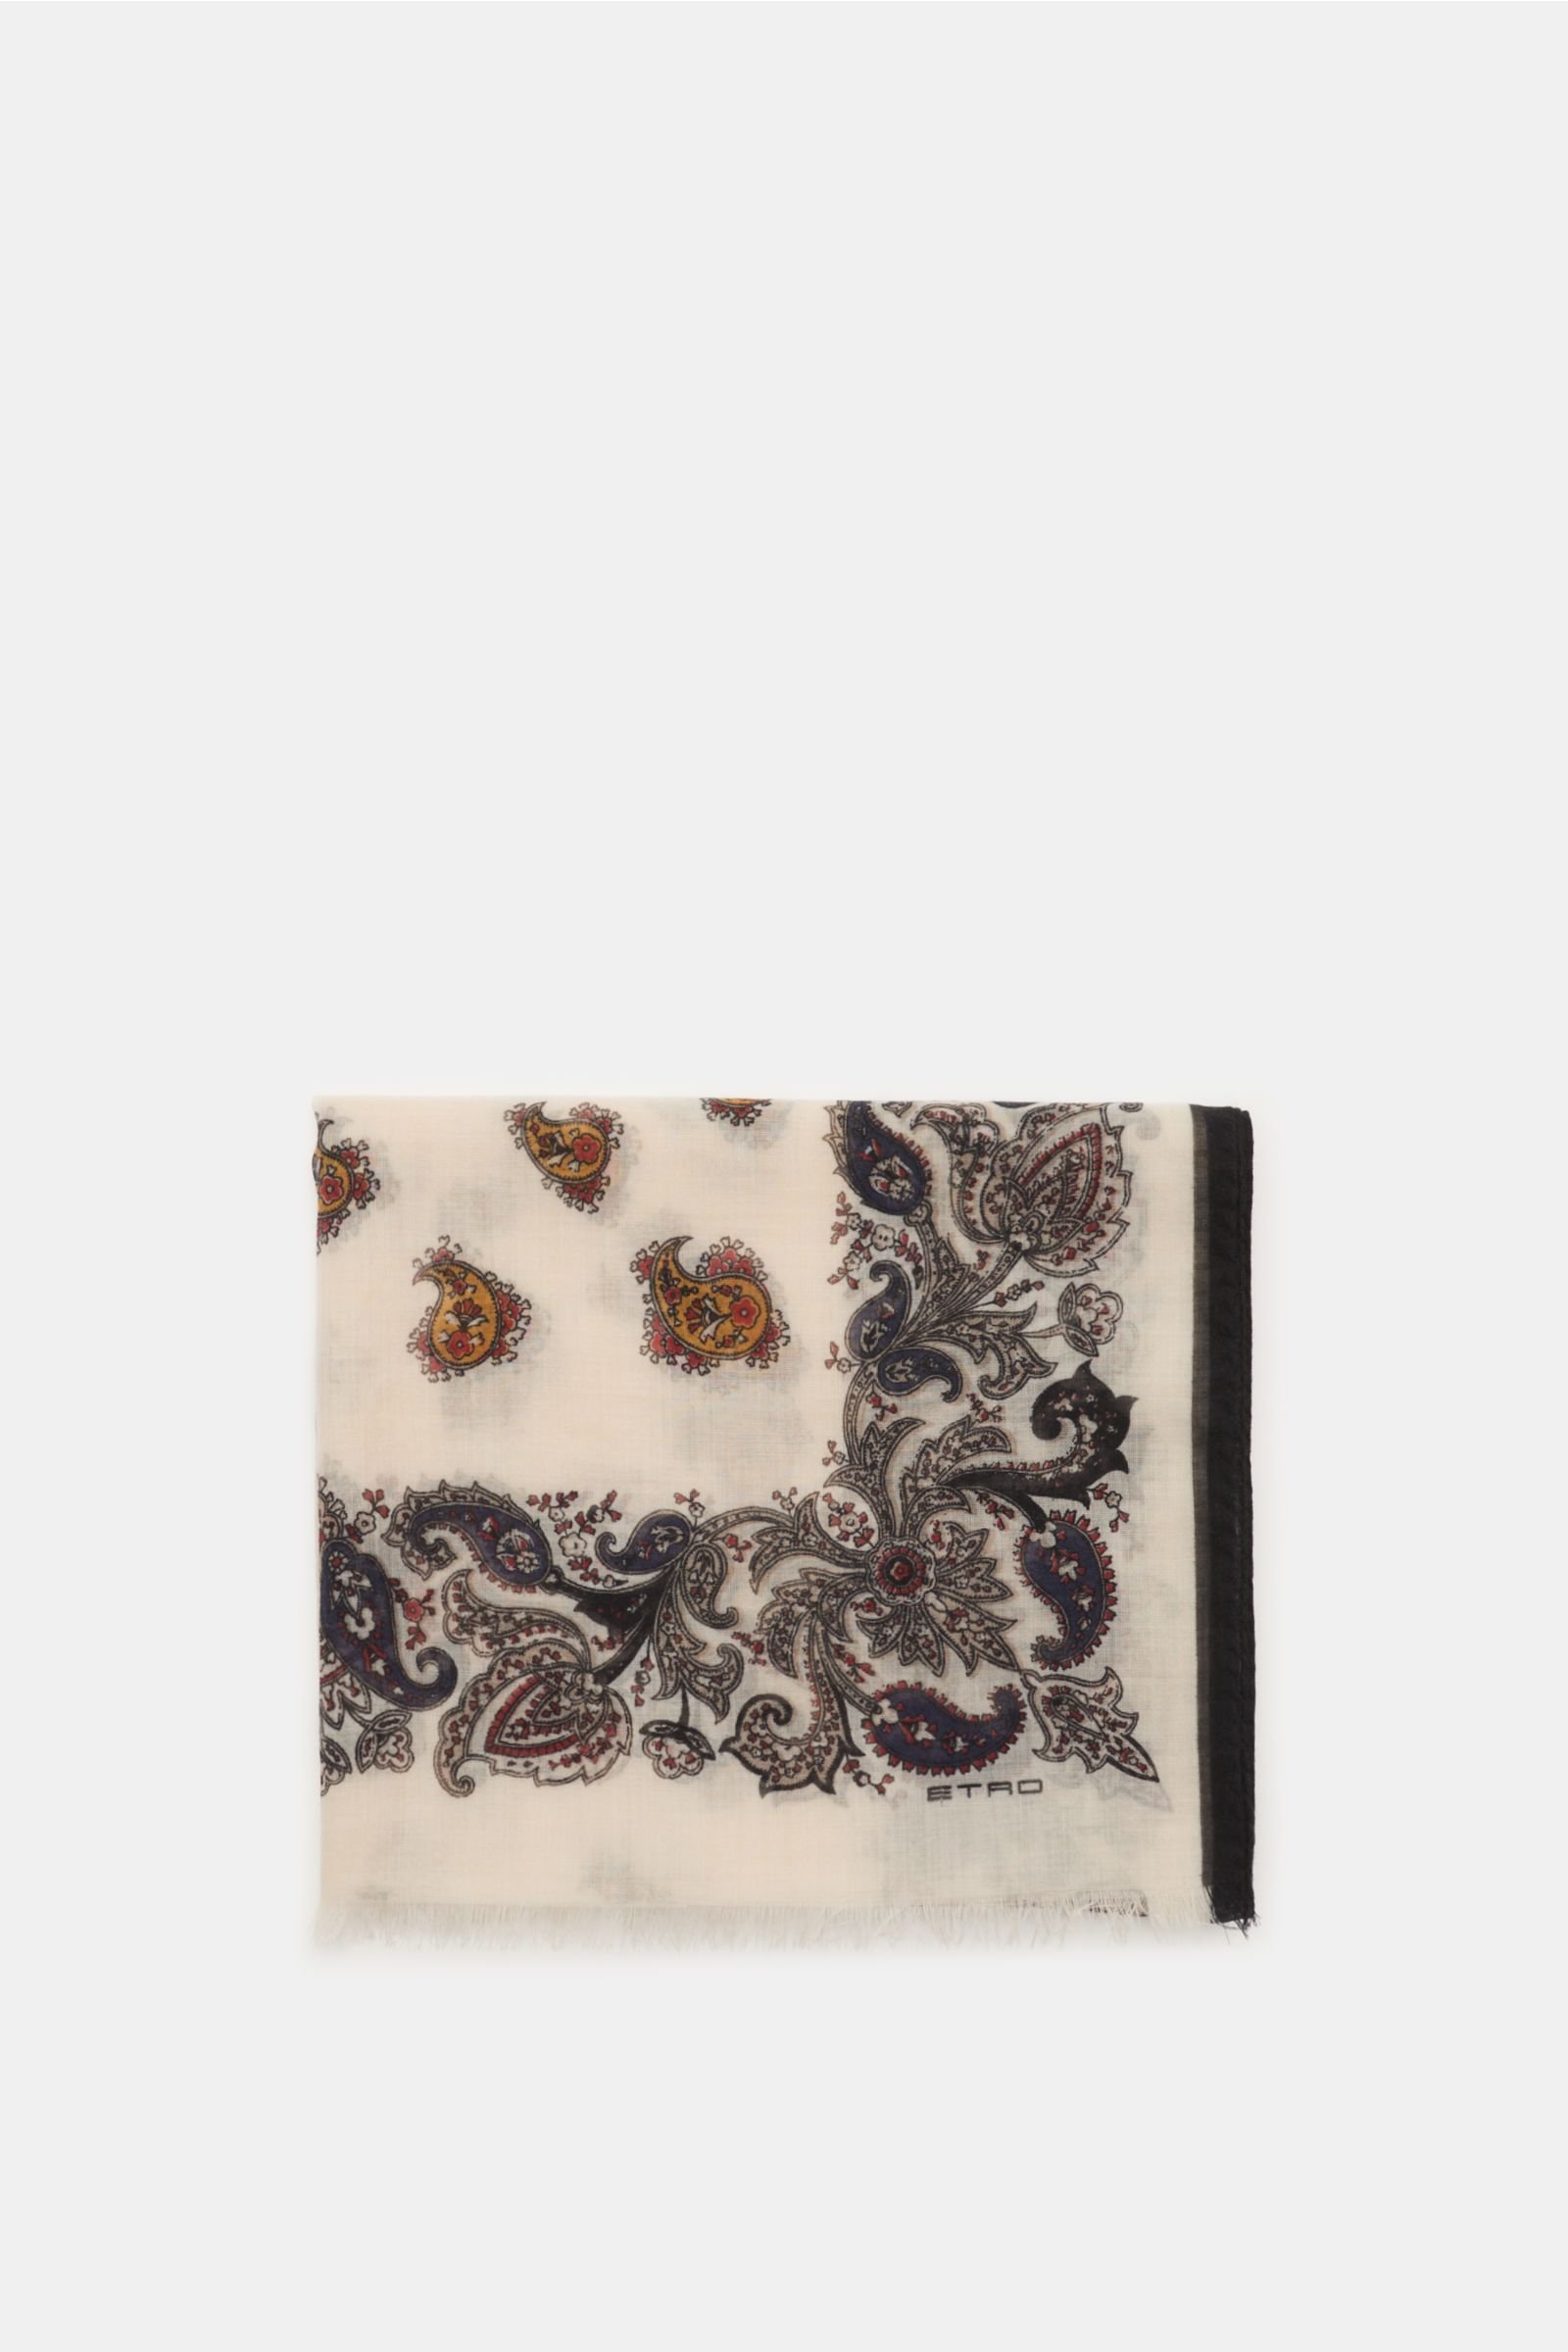 Cashmere scarf beige/black patterned